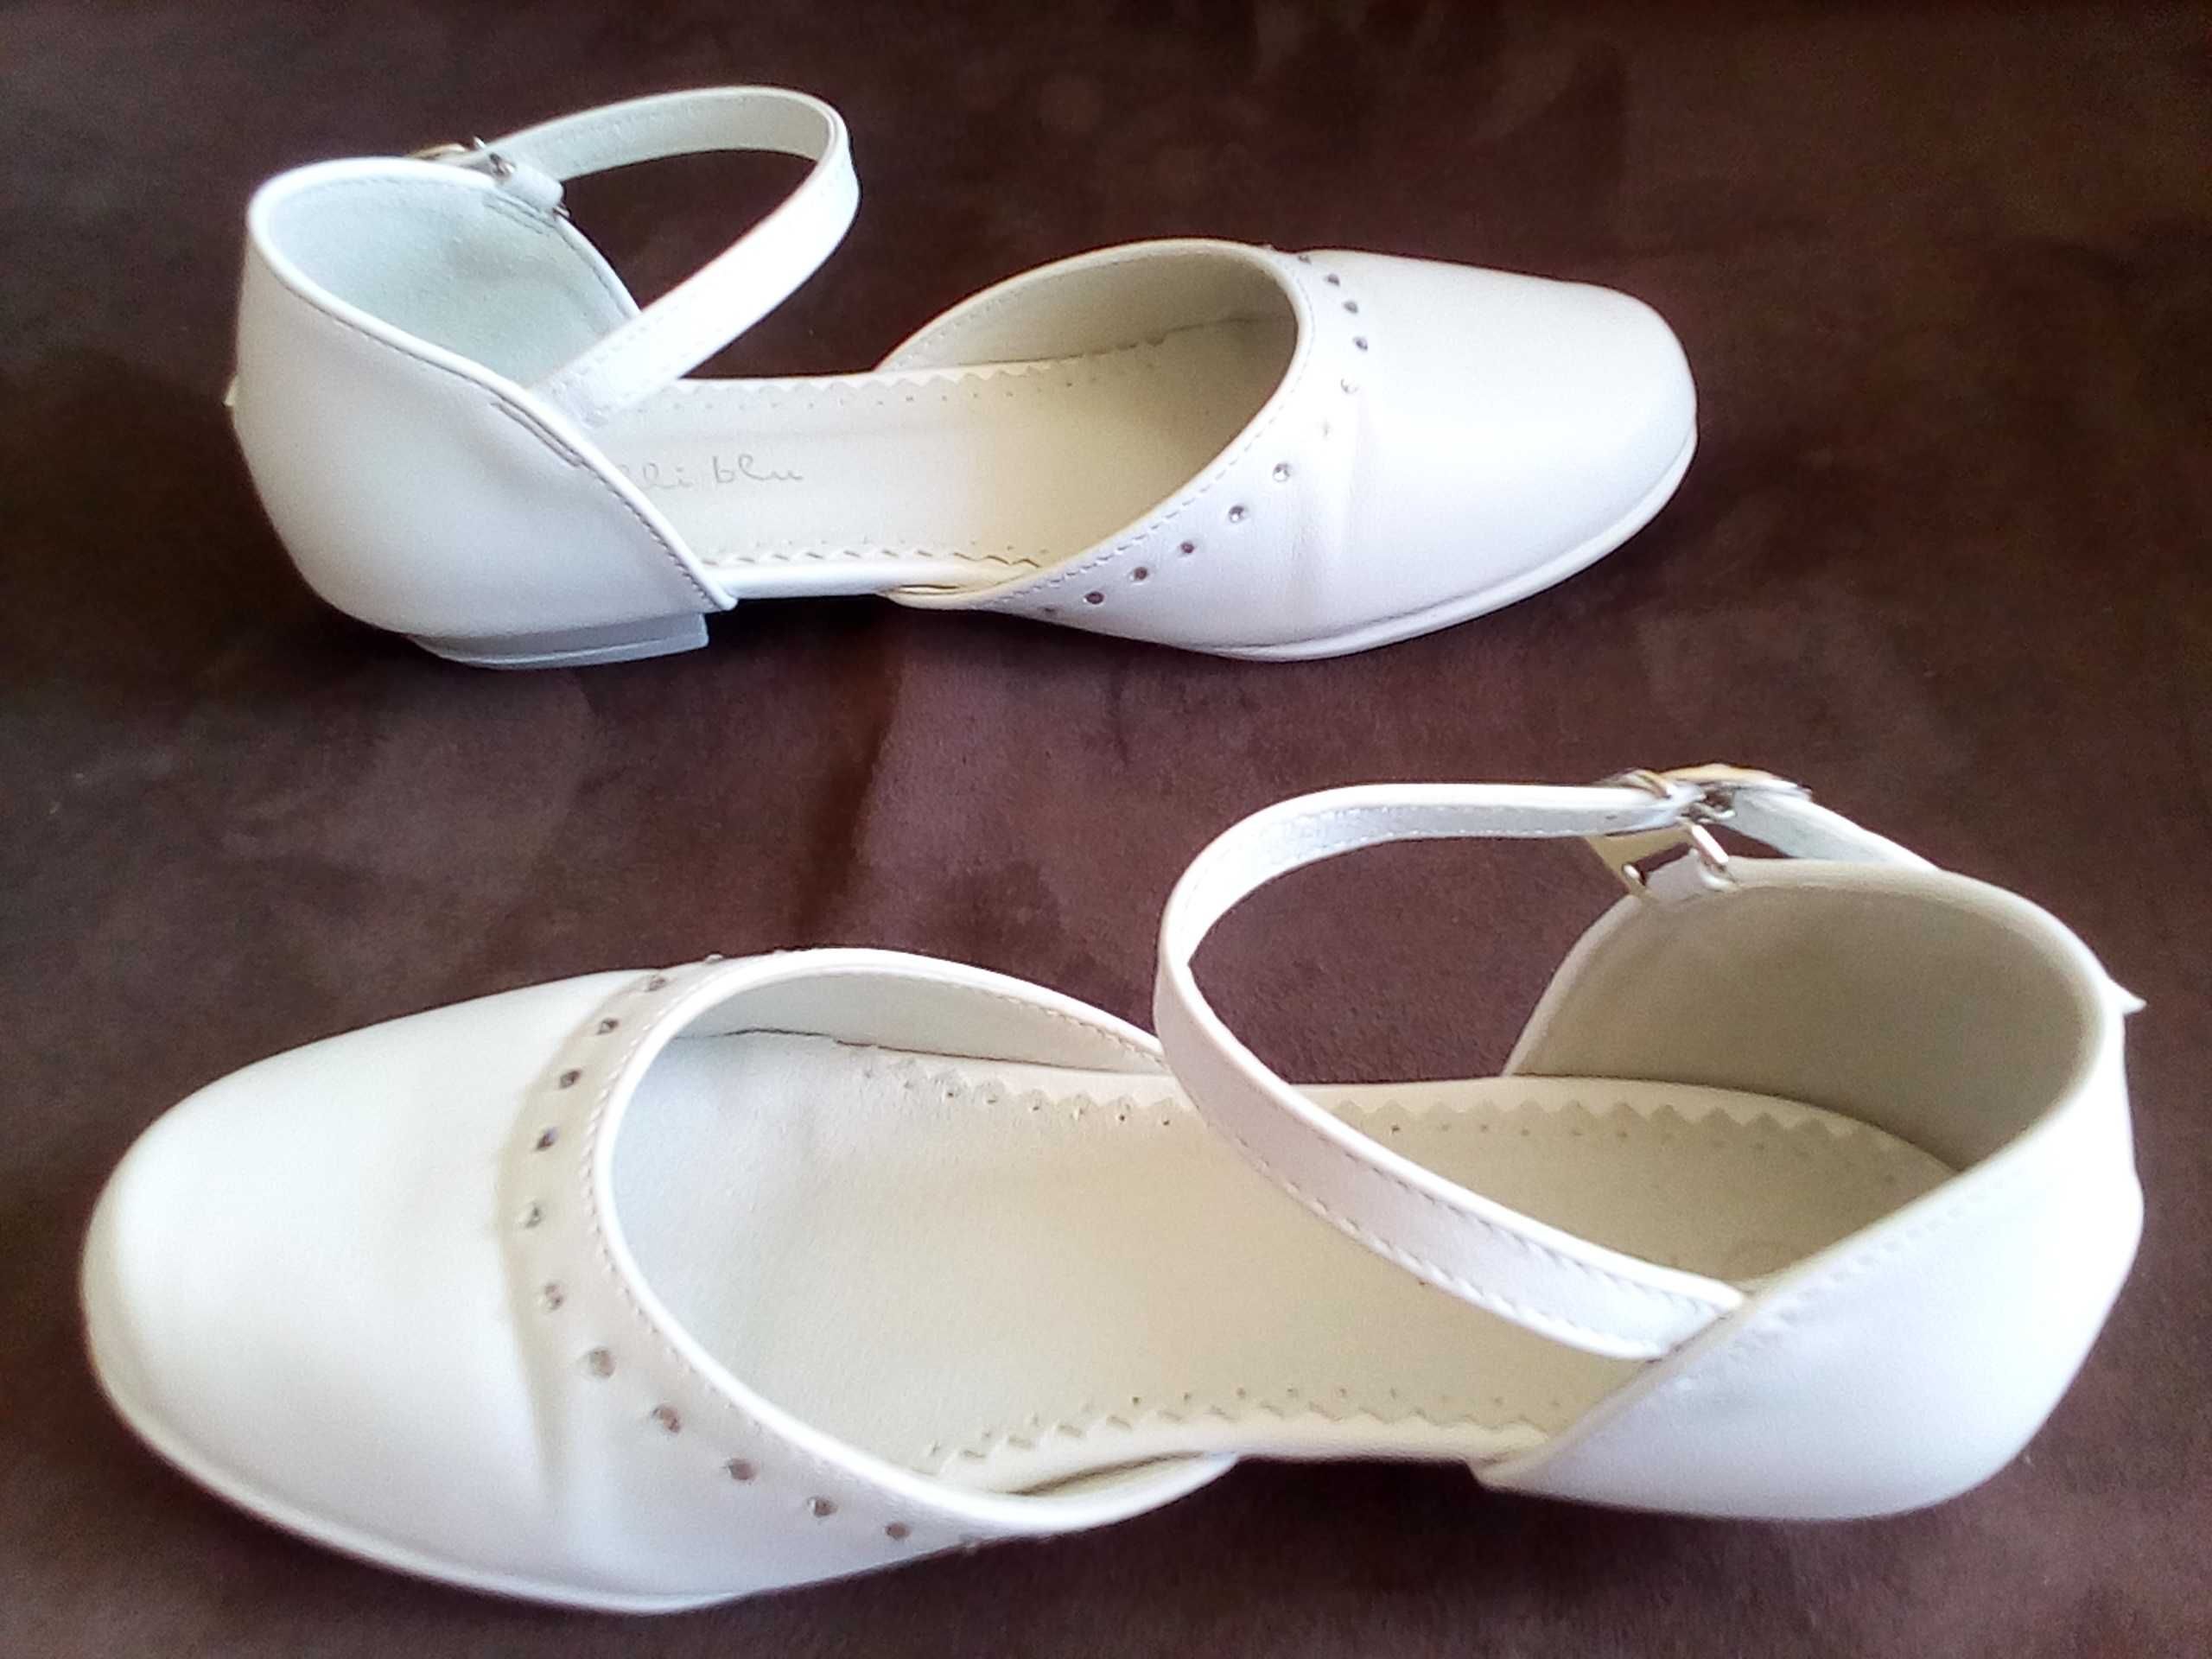 Białe buty pantofle Nelli blu r. 32, wew. 21cm, komunia, wesele